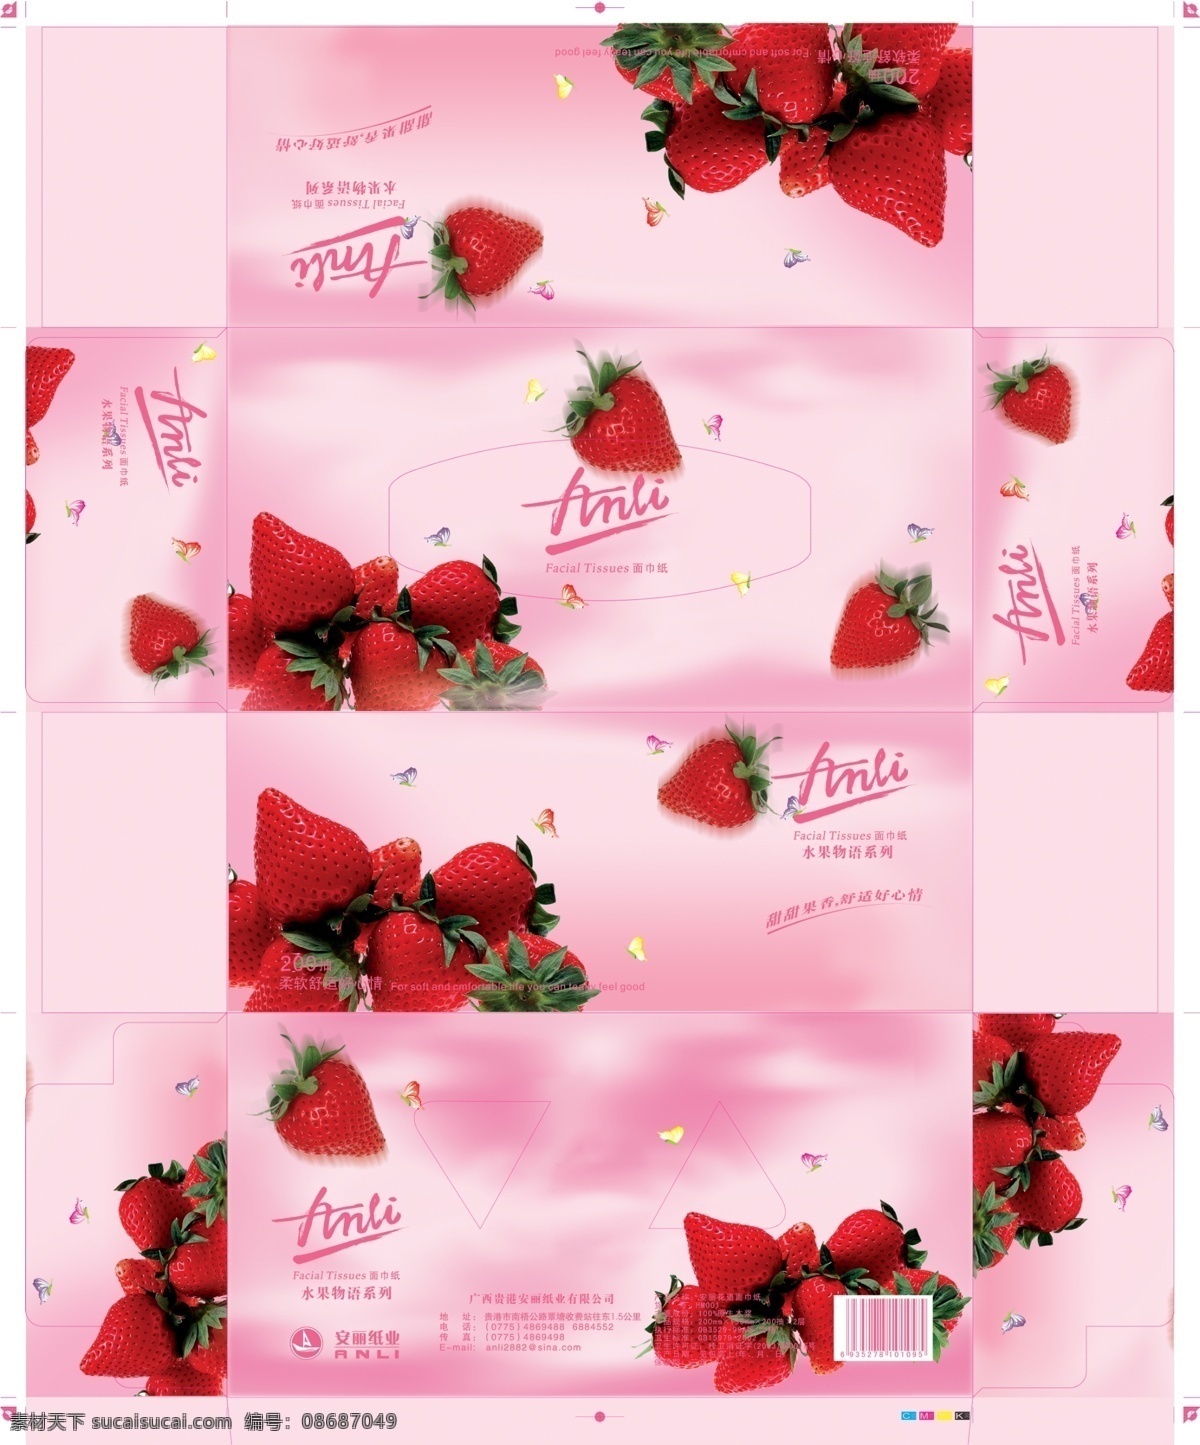 草莓 纸盒 设计制作 效果图 抽纸设计 分层素材 粉色 艺术字 纸盒设计 盒子印刷素材 袋子素材 纸盒产品 psd源文件